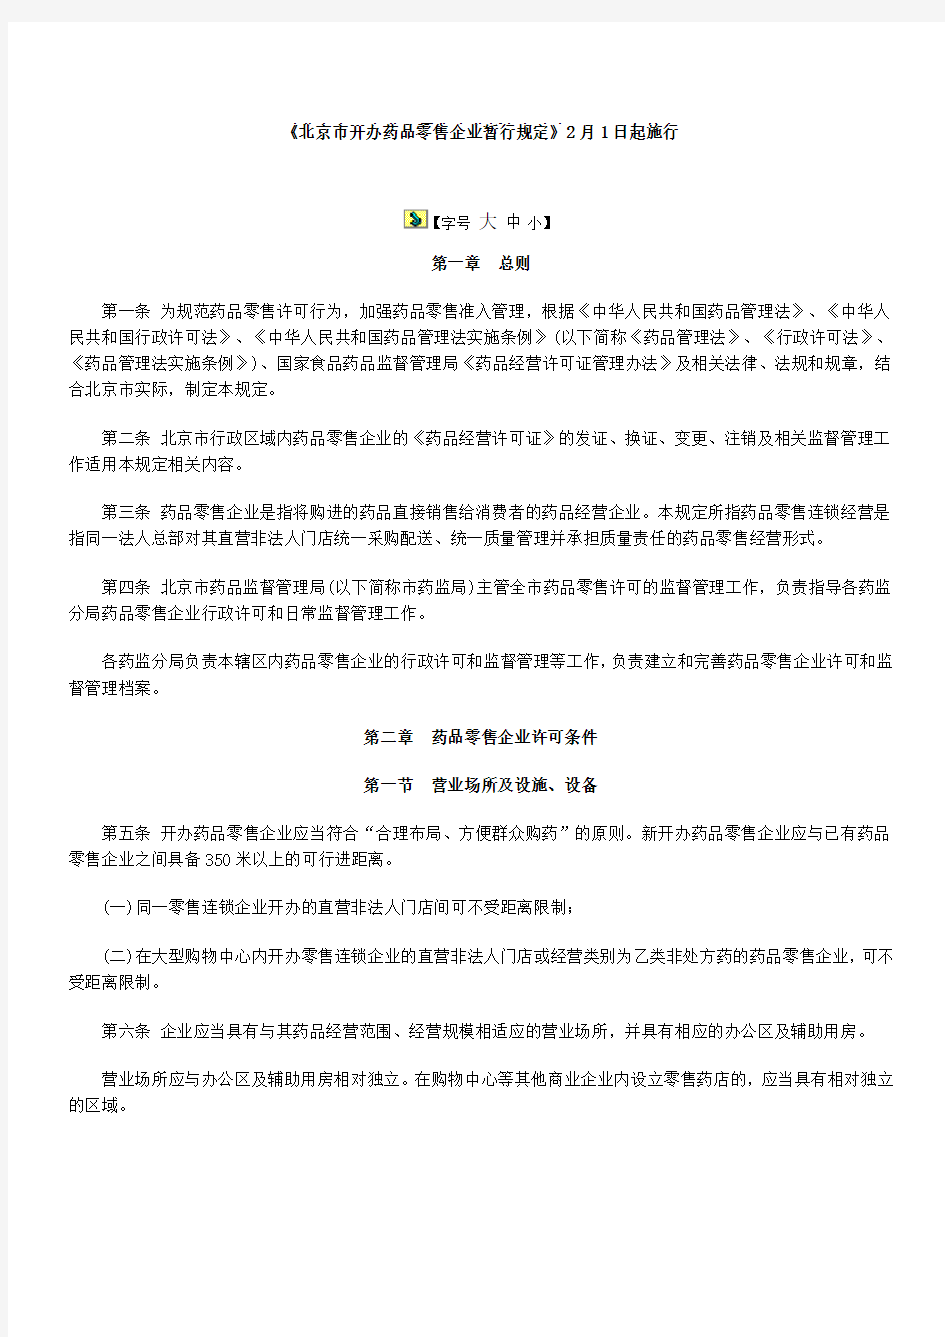 《北京市开办药品零售企业暂行规定》2月1日起施行